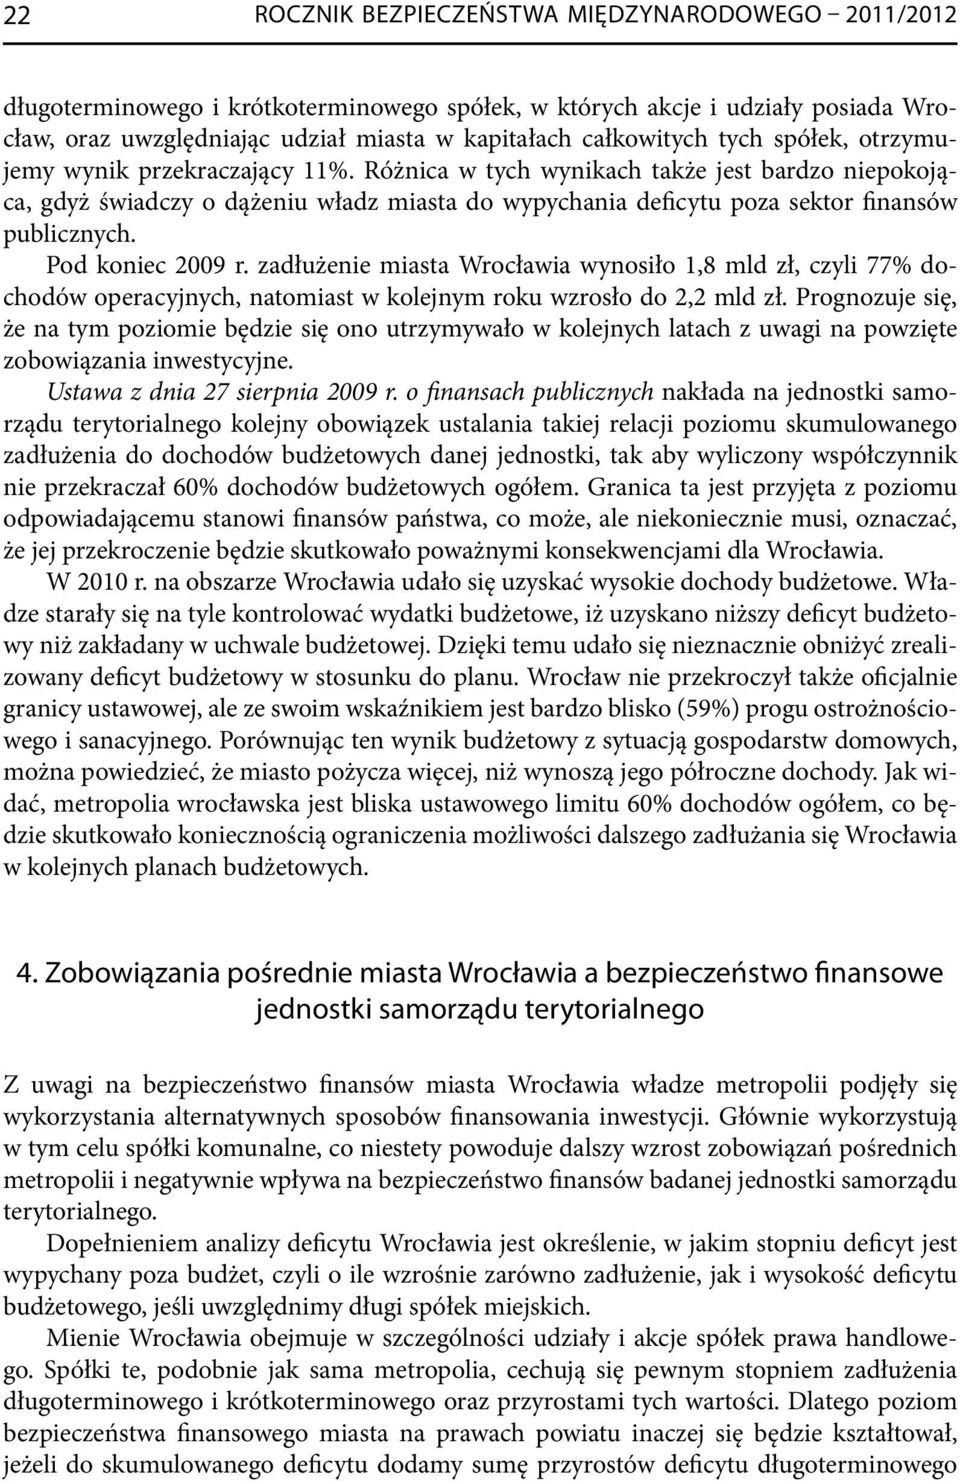 Pod koniec 2009 r. zadłużenie miasta Wrocławia wynosiło 1,8 mld zł, czyli 77% dochodów operacyjnych, natomiast w kolejnym roku wzrosło do 2,2 mld zł.